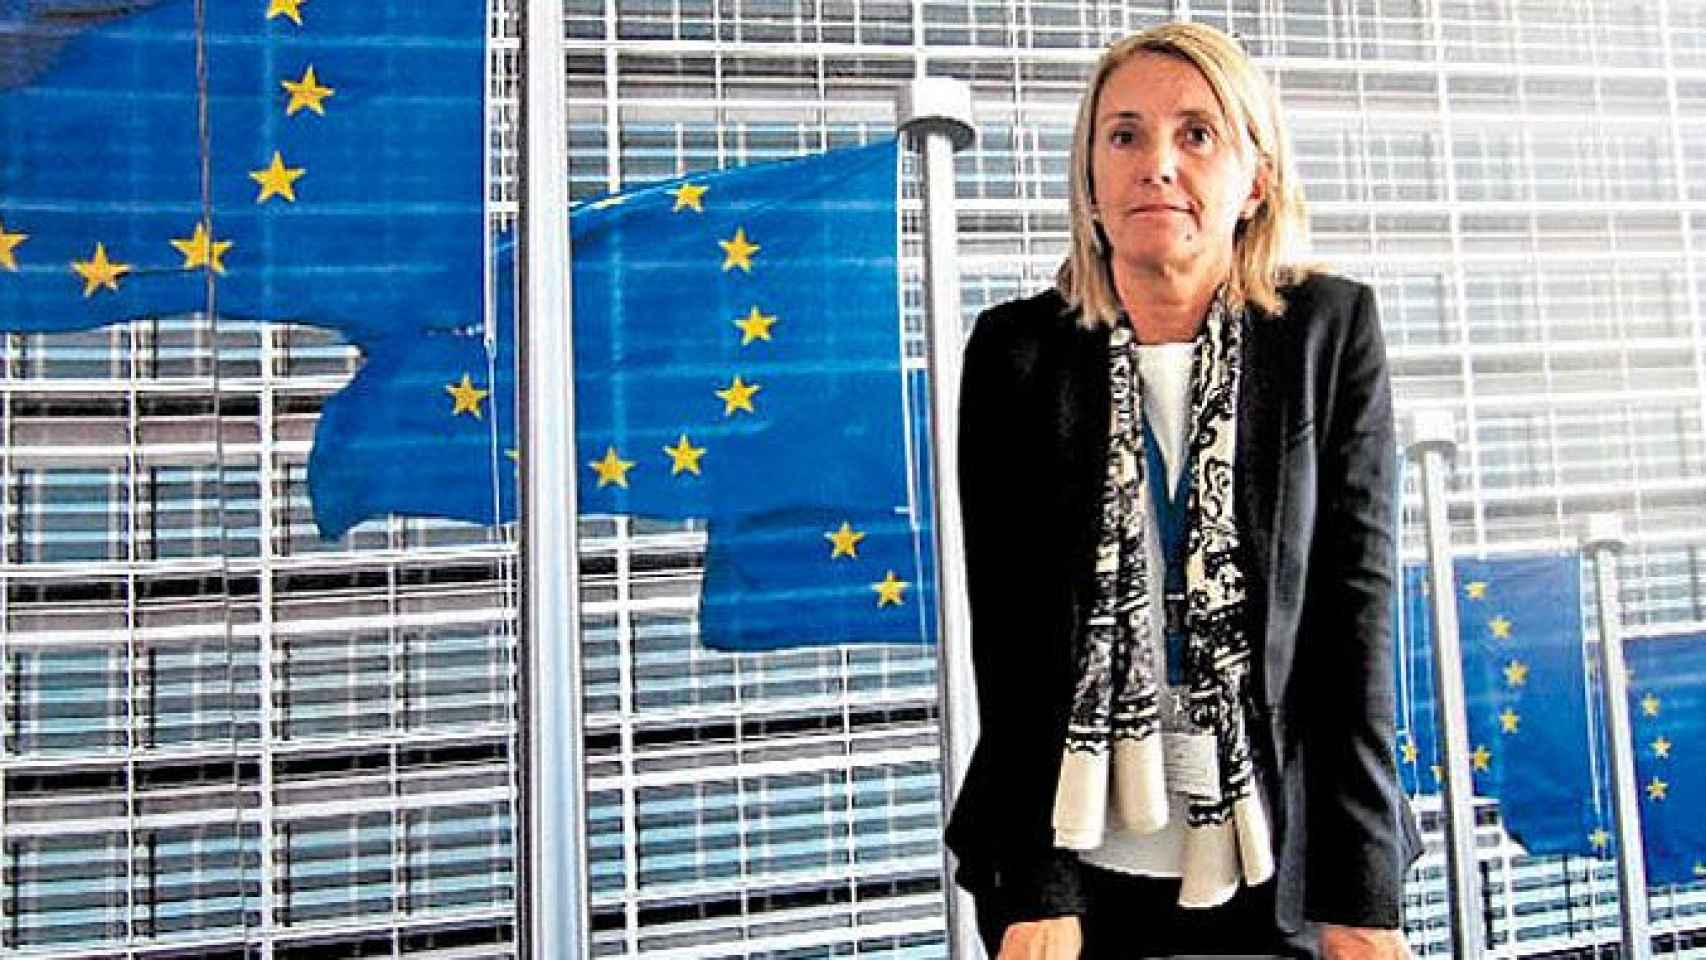 Carmen Martínez Alberola, la nueva jefa de gabinete de Jean-Claude Juncker española / CG